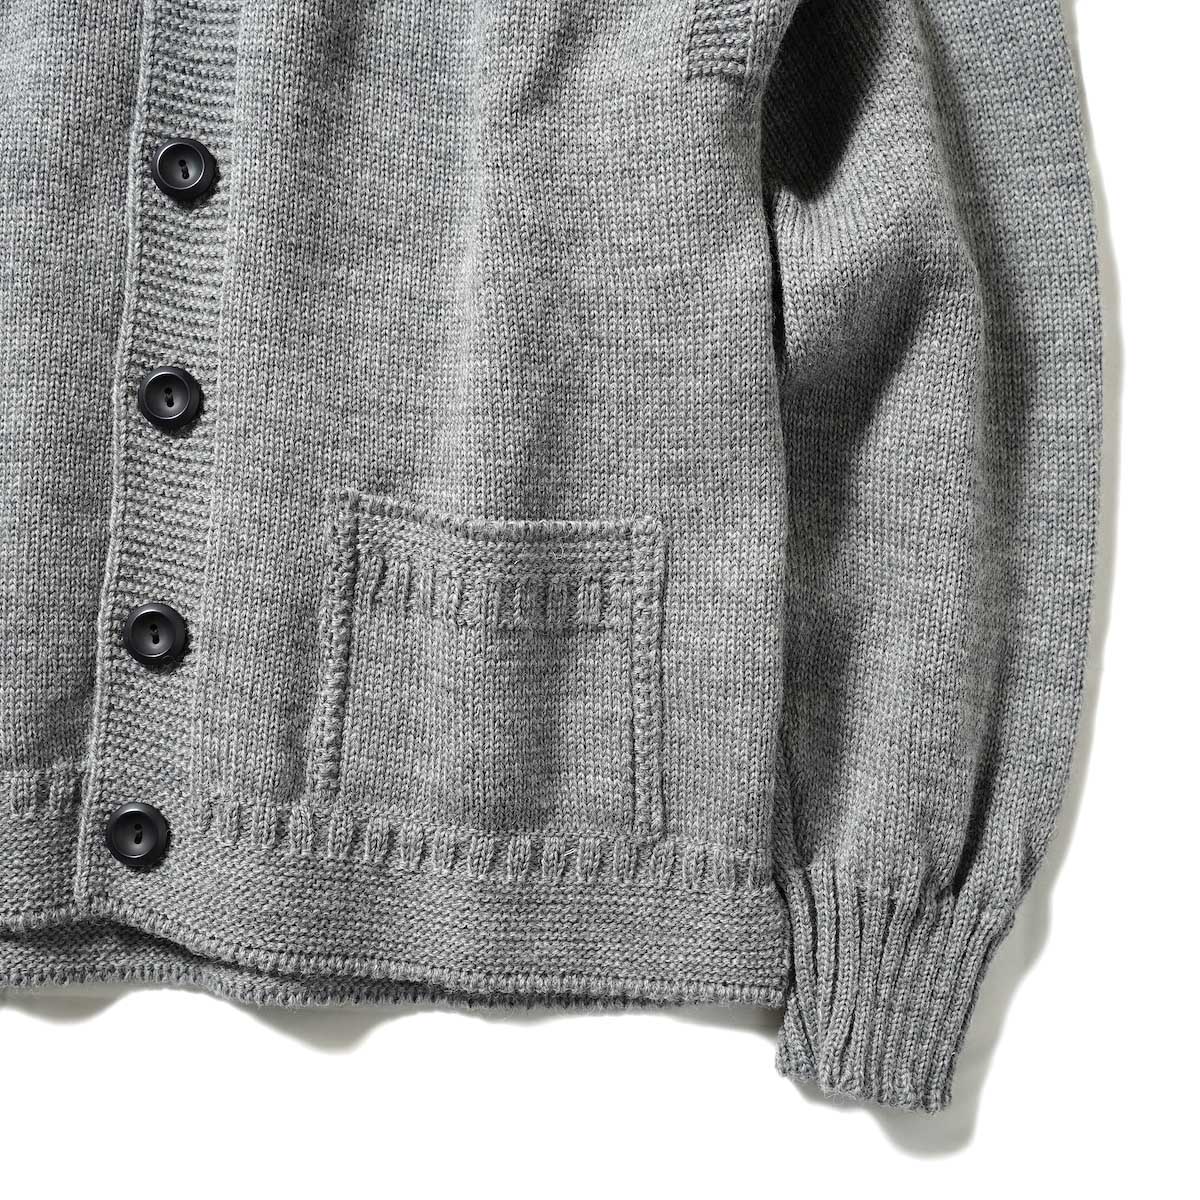 Guernsey Woollens / Bouet (Gray)袖、裾